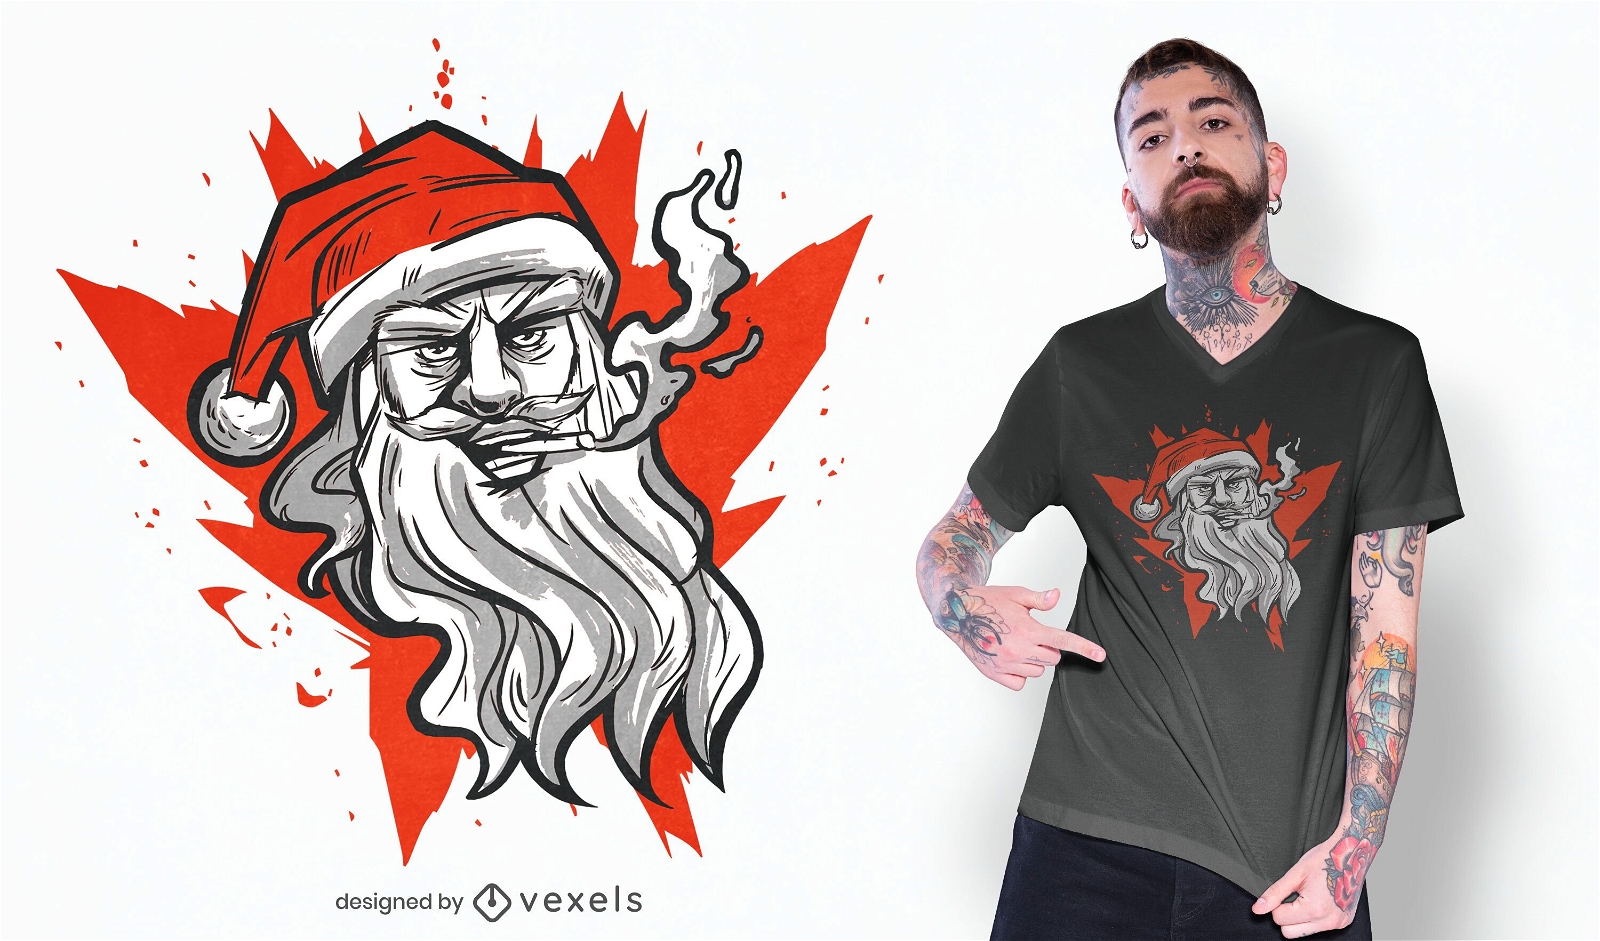 Bad Santa t-shirt design